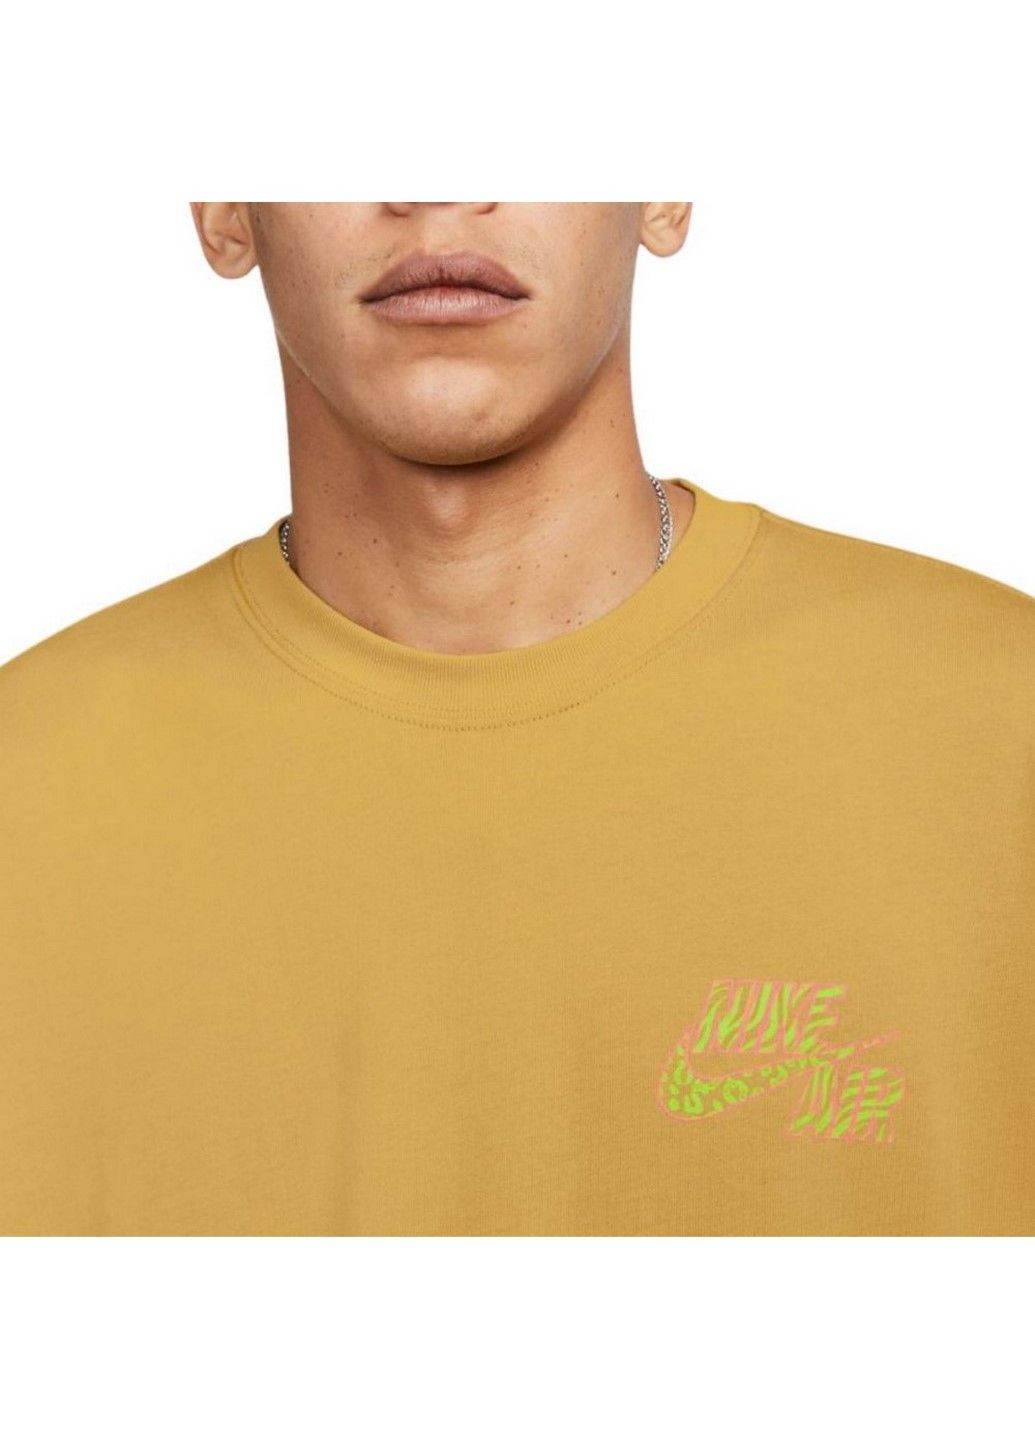 Желтая футболка m nsw tee os brandriffs lbr fb9817-725 Nike